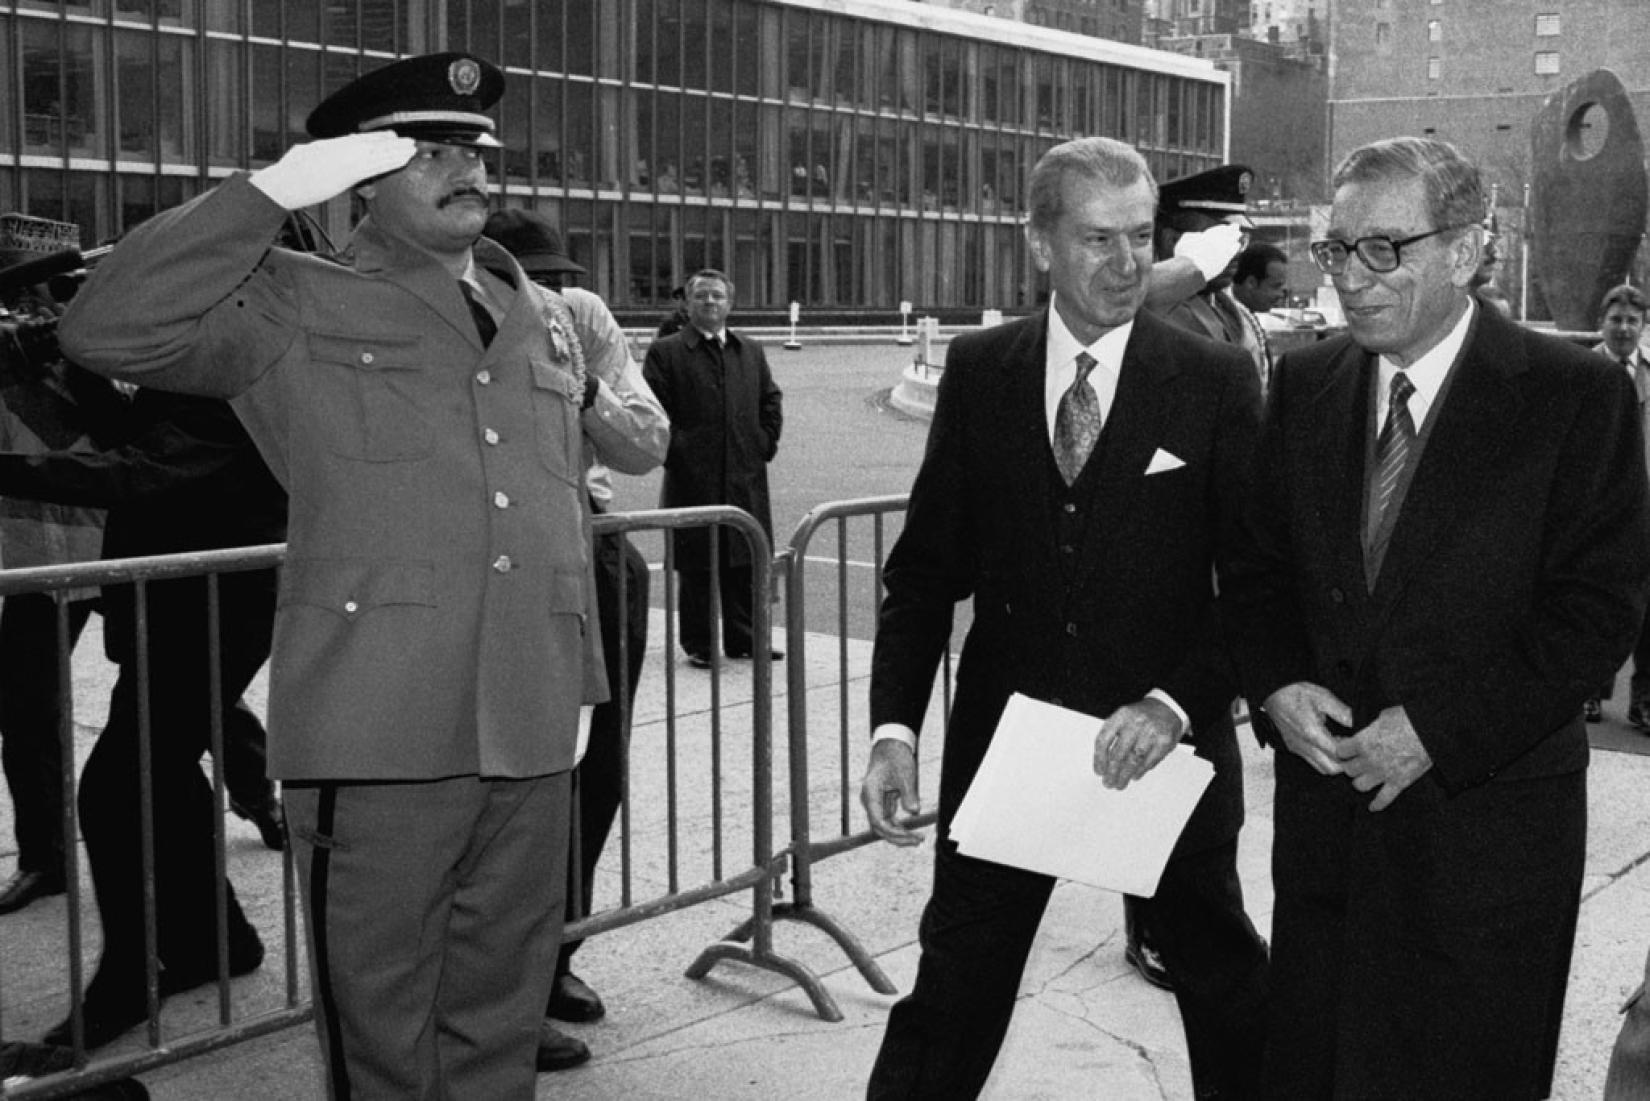 No dia 2 de janeiro de 1992, Boutros Boutros-Ghali (à direita), então secretário-geral das Nações Unidas, chega à entrada Secretariado para seu primeiro dia de trabalho na Organização. Aly Teymour, chefe do Protocolo, o acompanha. Foto: ONU/John Isaac